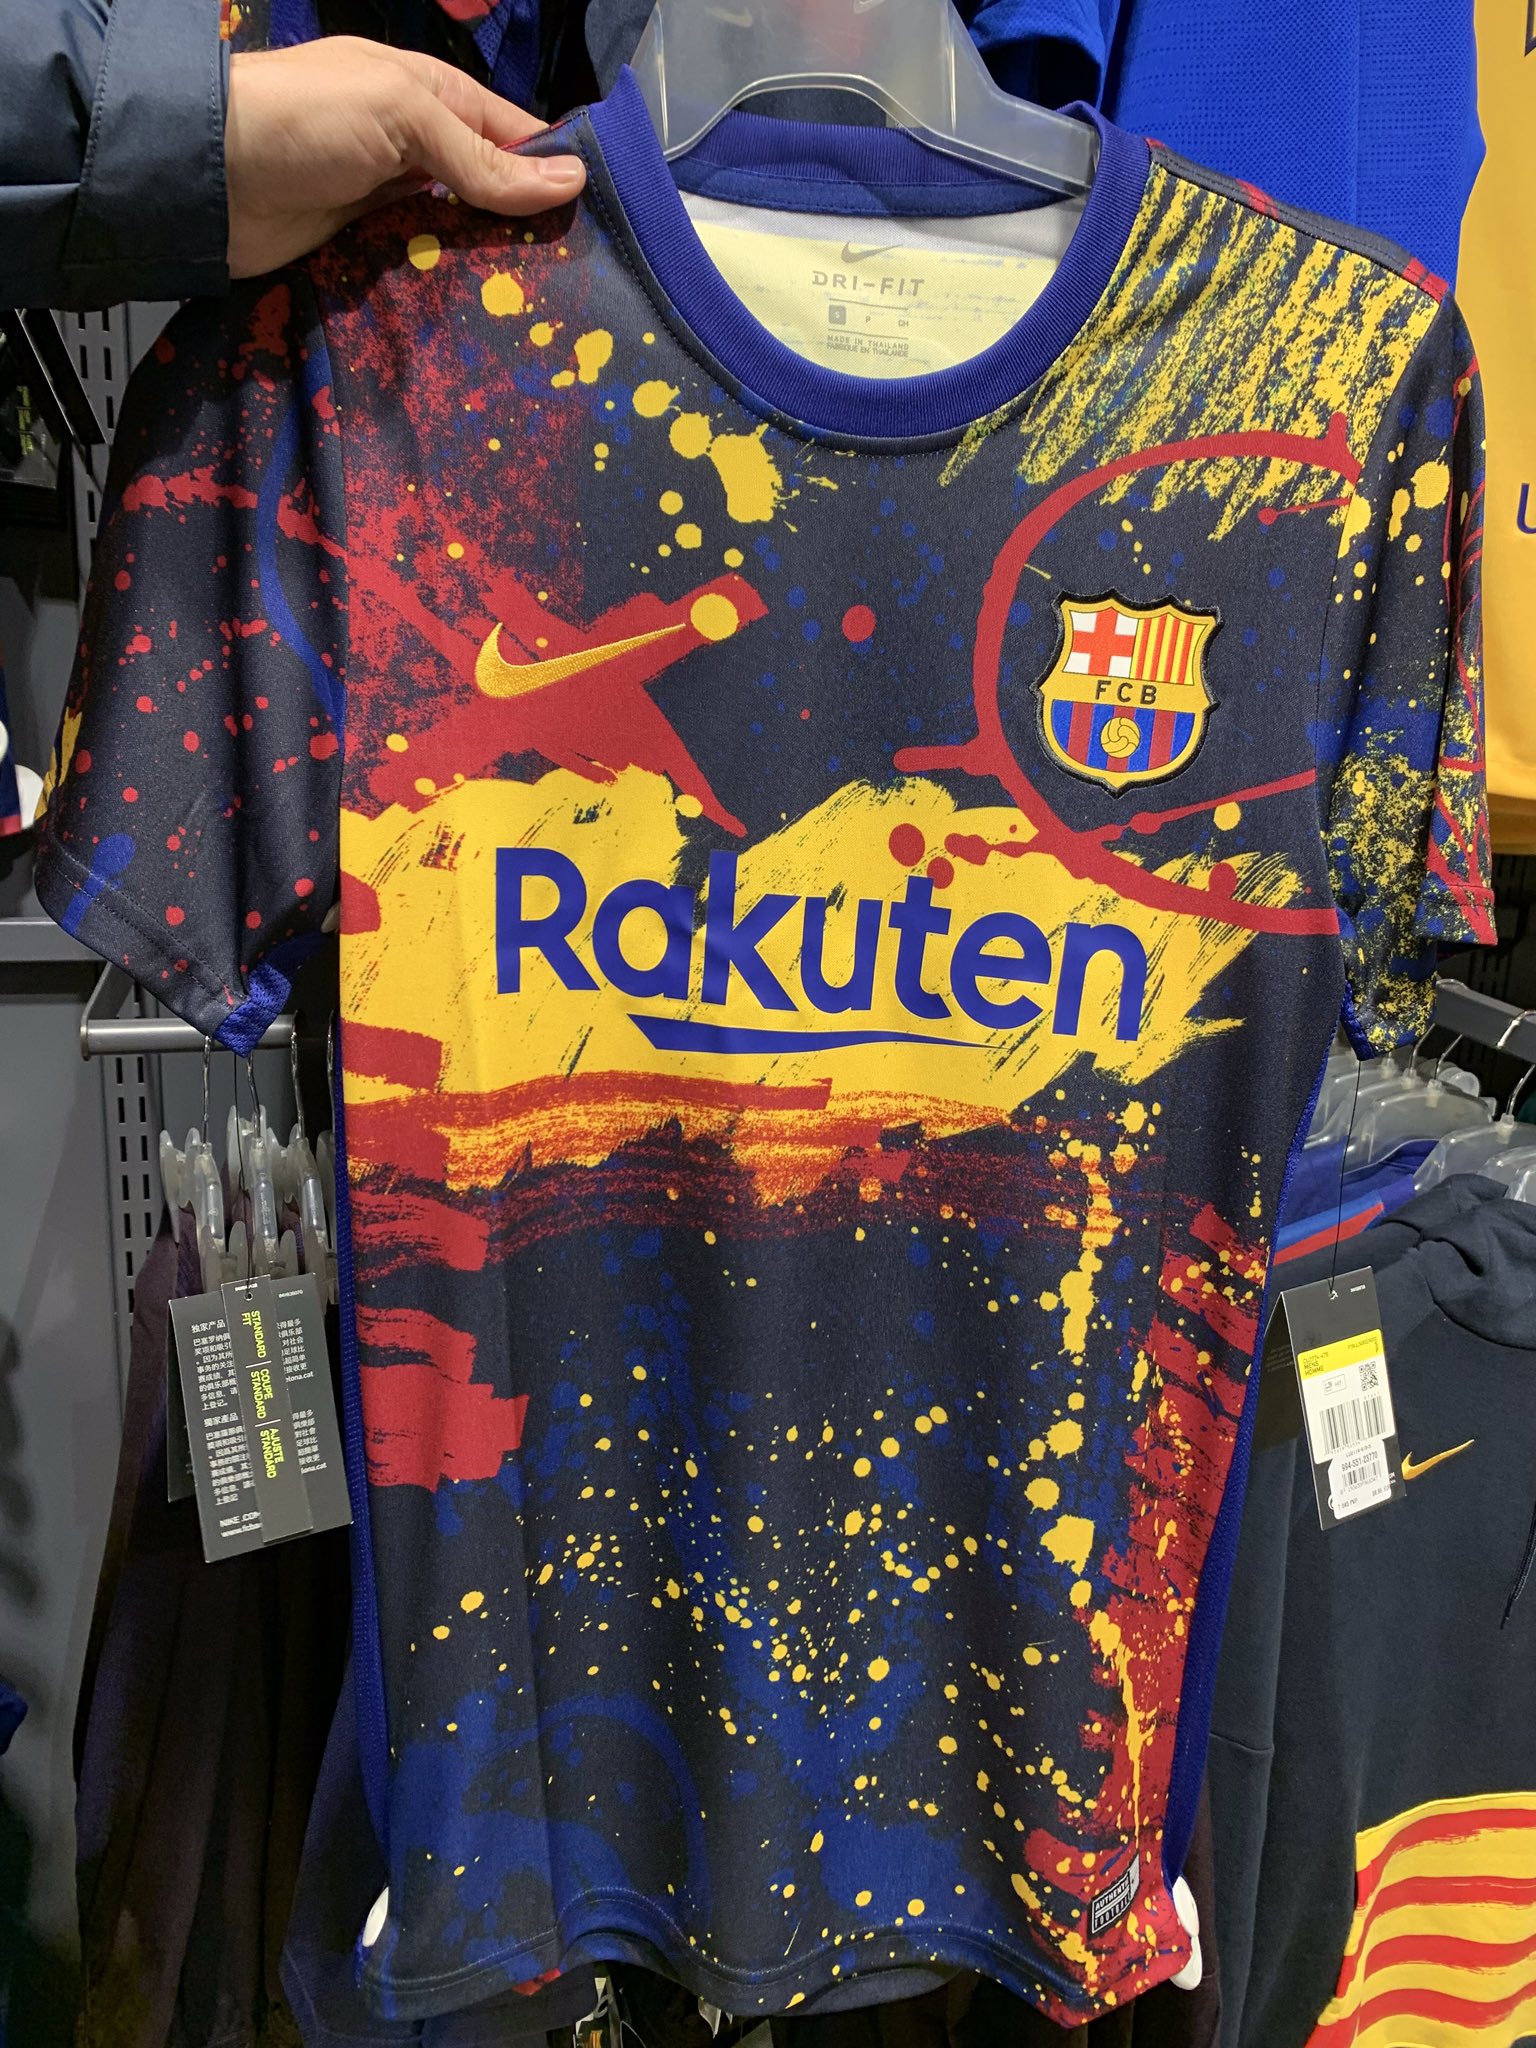 Filtrada una nueva camiseta del Barça: ¿Pollock o Miró?